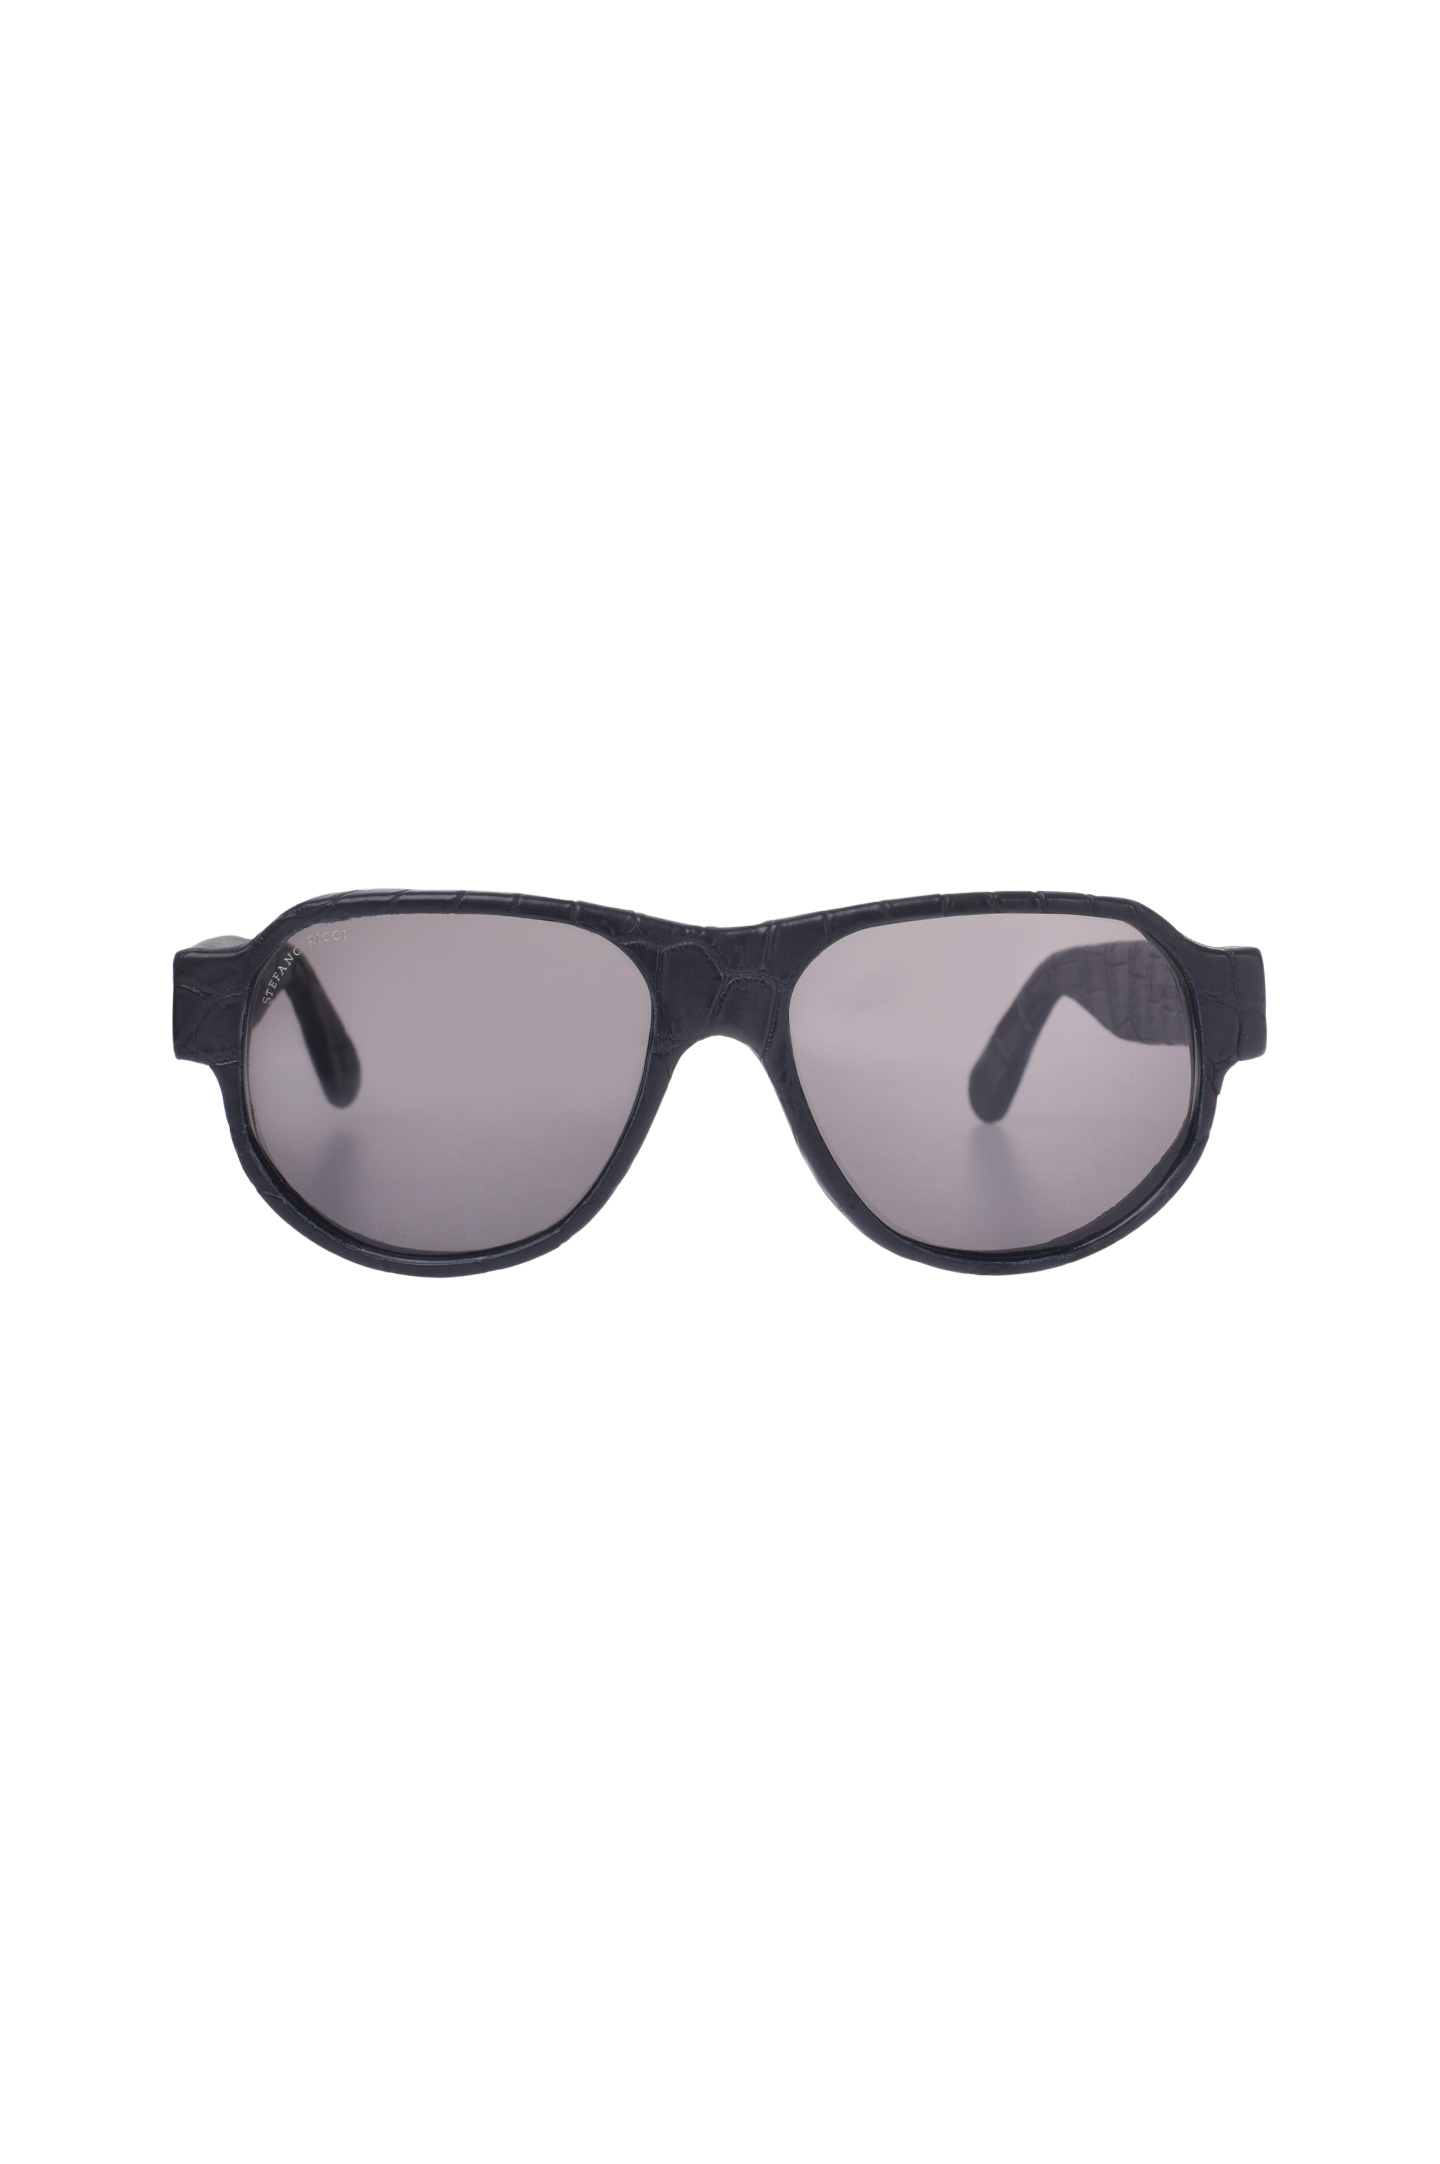 Солнцезащитные очки  STEFANO RICCI SG002P CS SGBOXP VDCS, цвет: Черный, Мужской